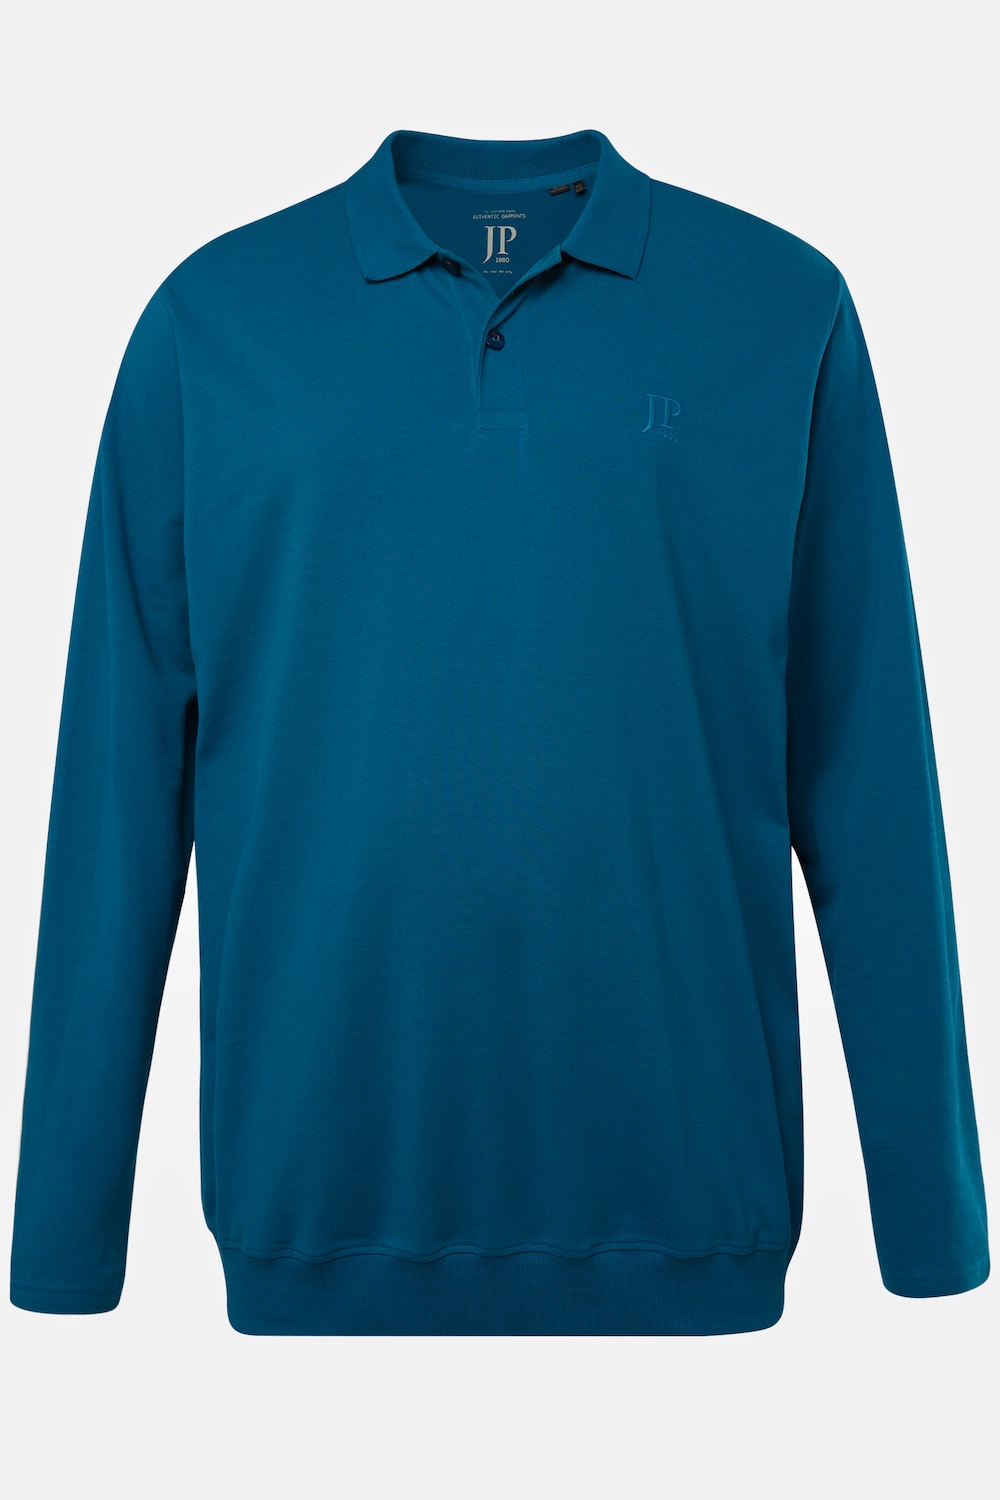 Grote Maten Poloshirt, Heren, blauw, Maat: 5XL, Katoen, JP1880